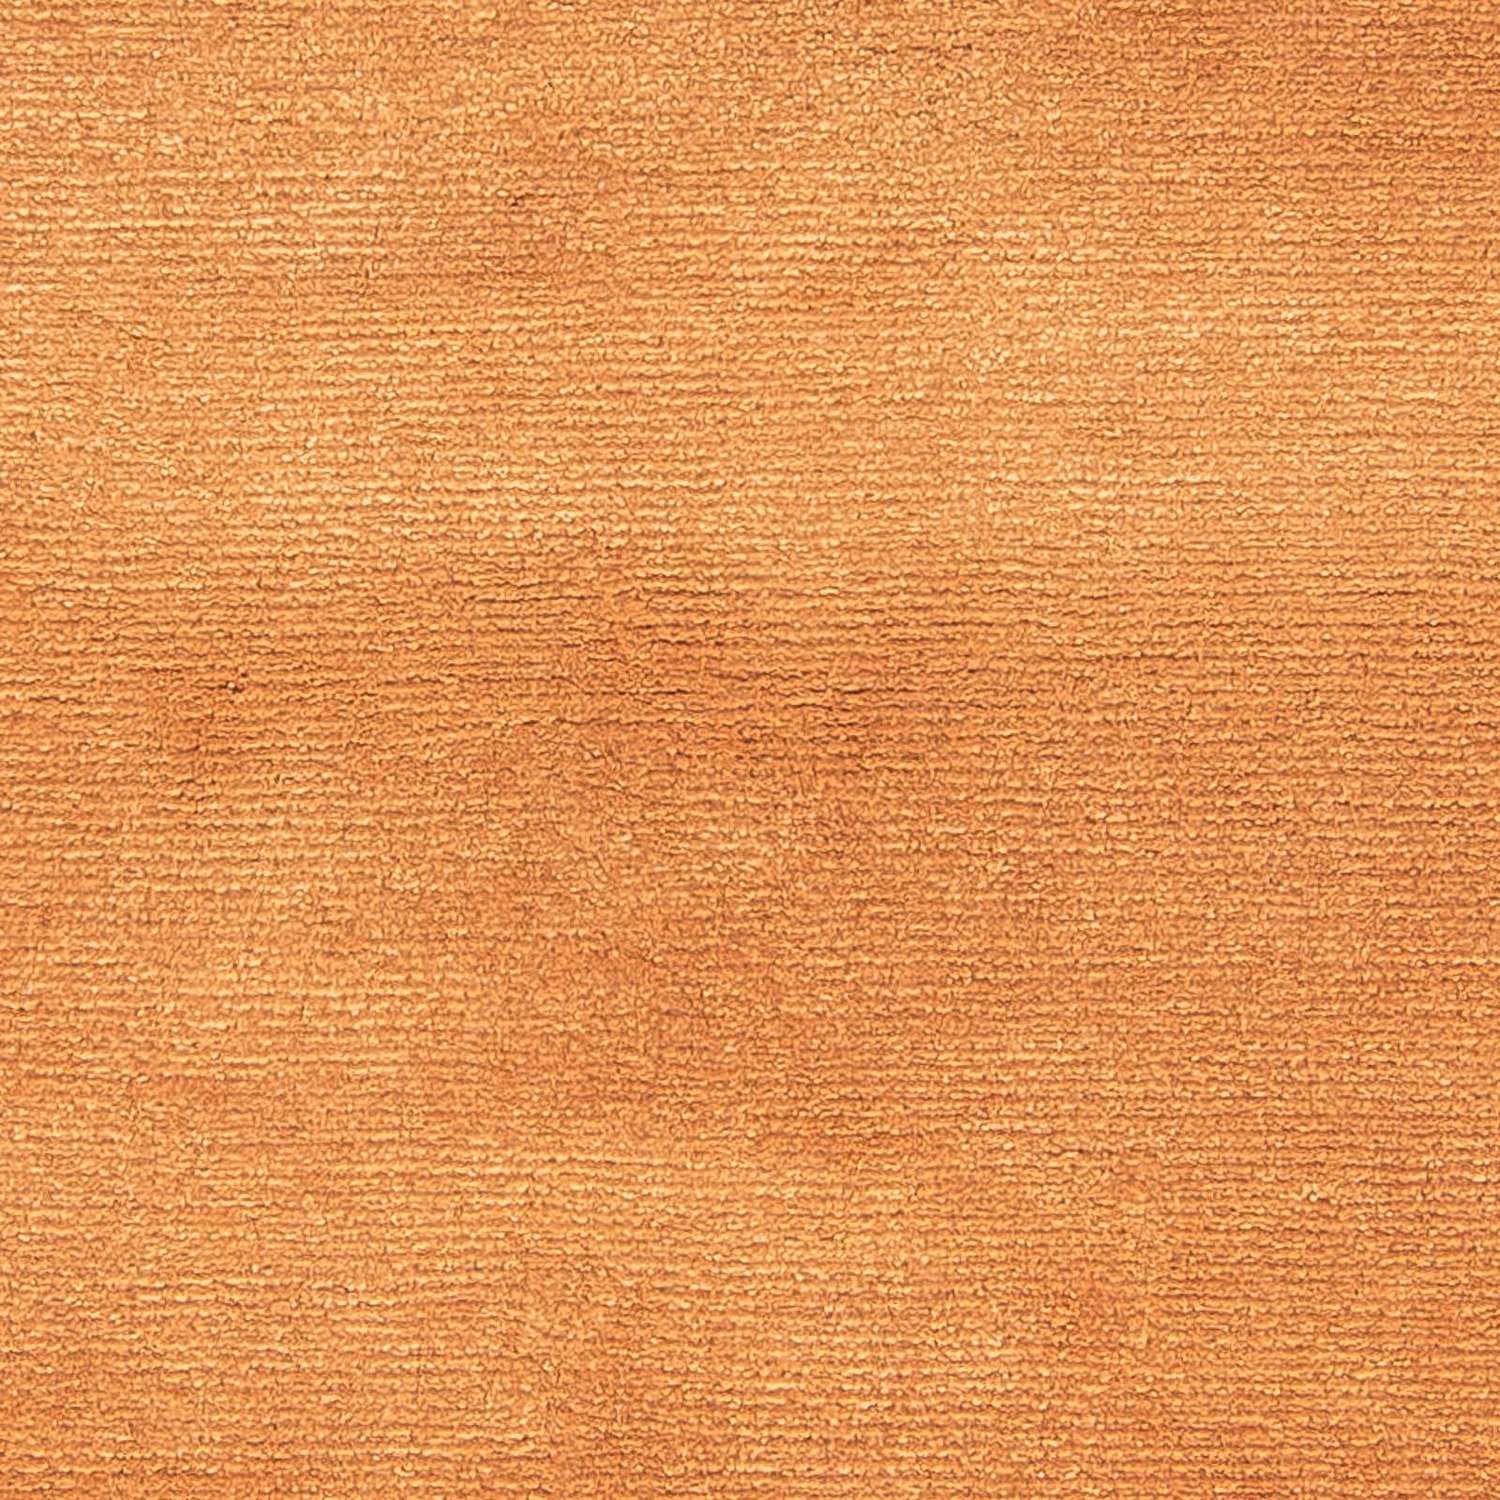 Nepal Rug - 193 x 142 cm - brown